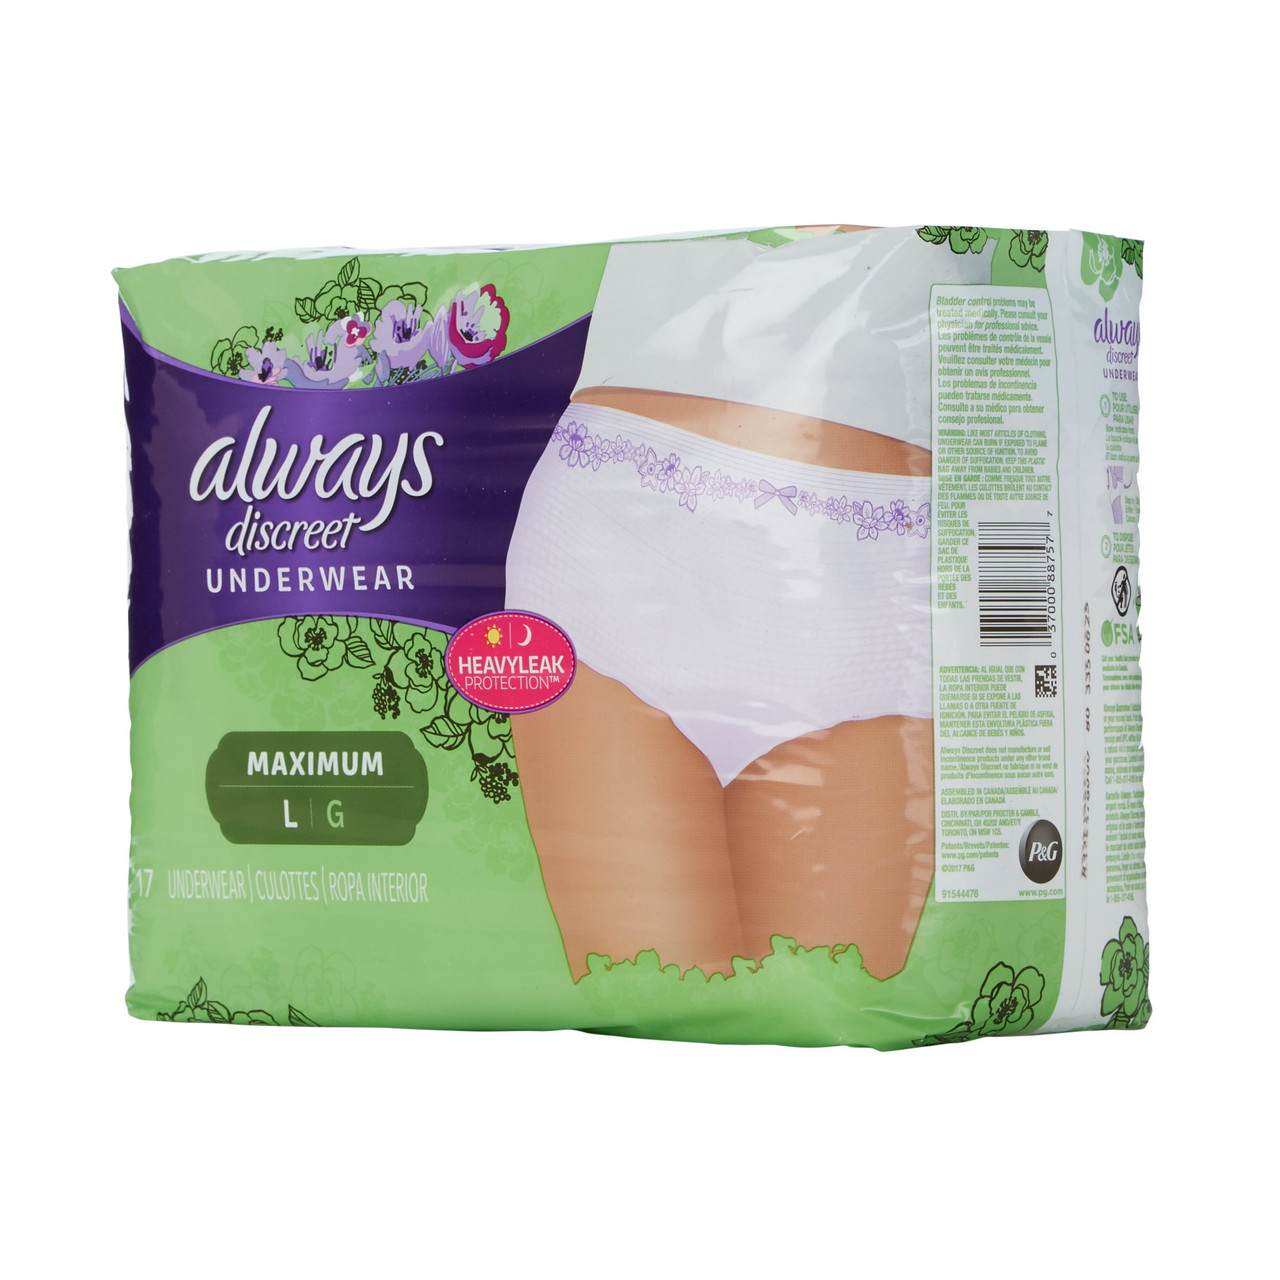 Partum Panties - Maternity Disposable Underwear (Size L-XL) – Oak